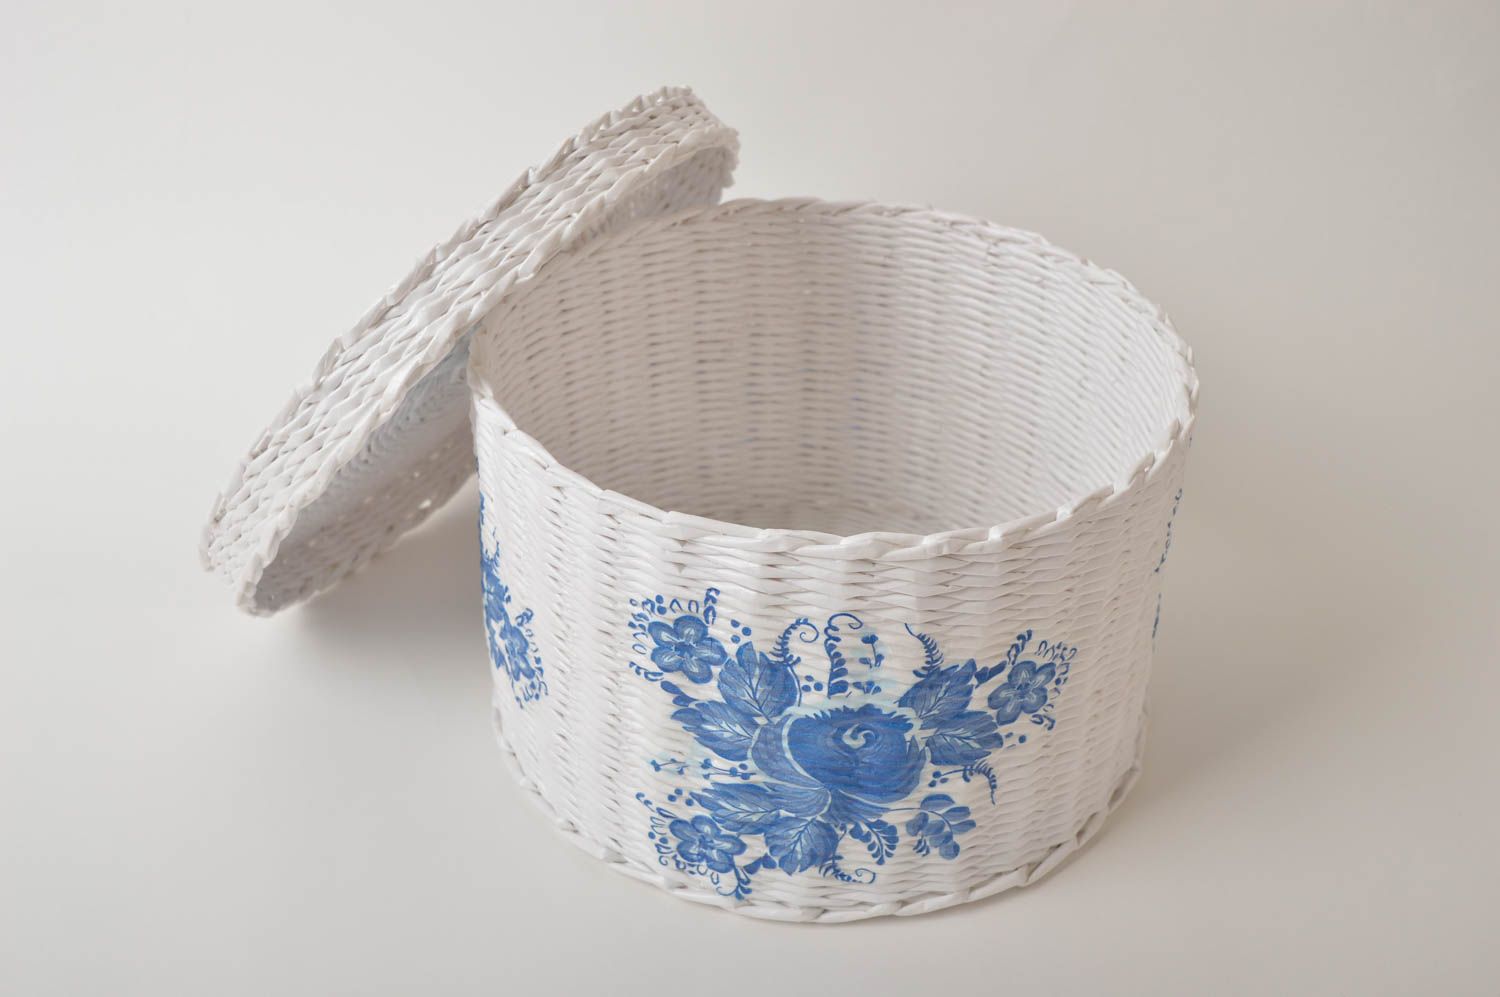 Homemade home decor woven basket small basket souvenir ideas gifts for women photo 3